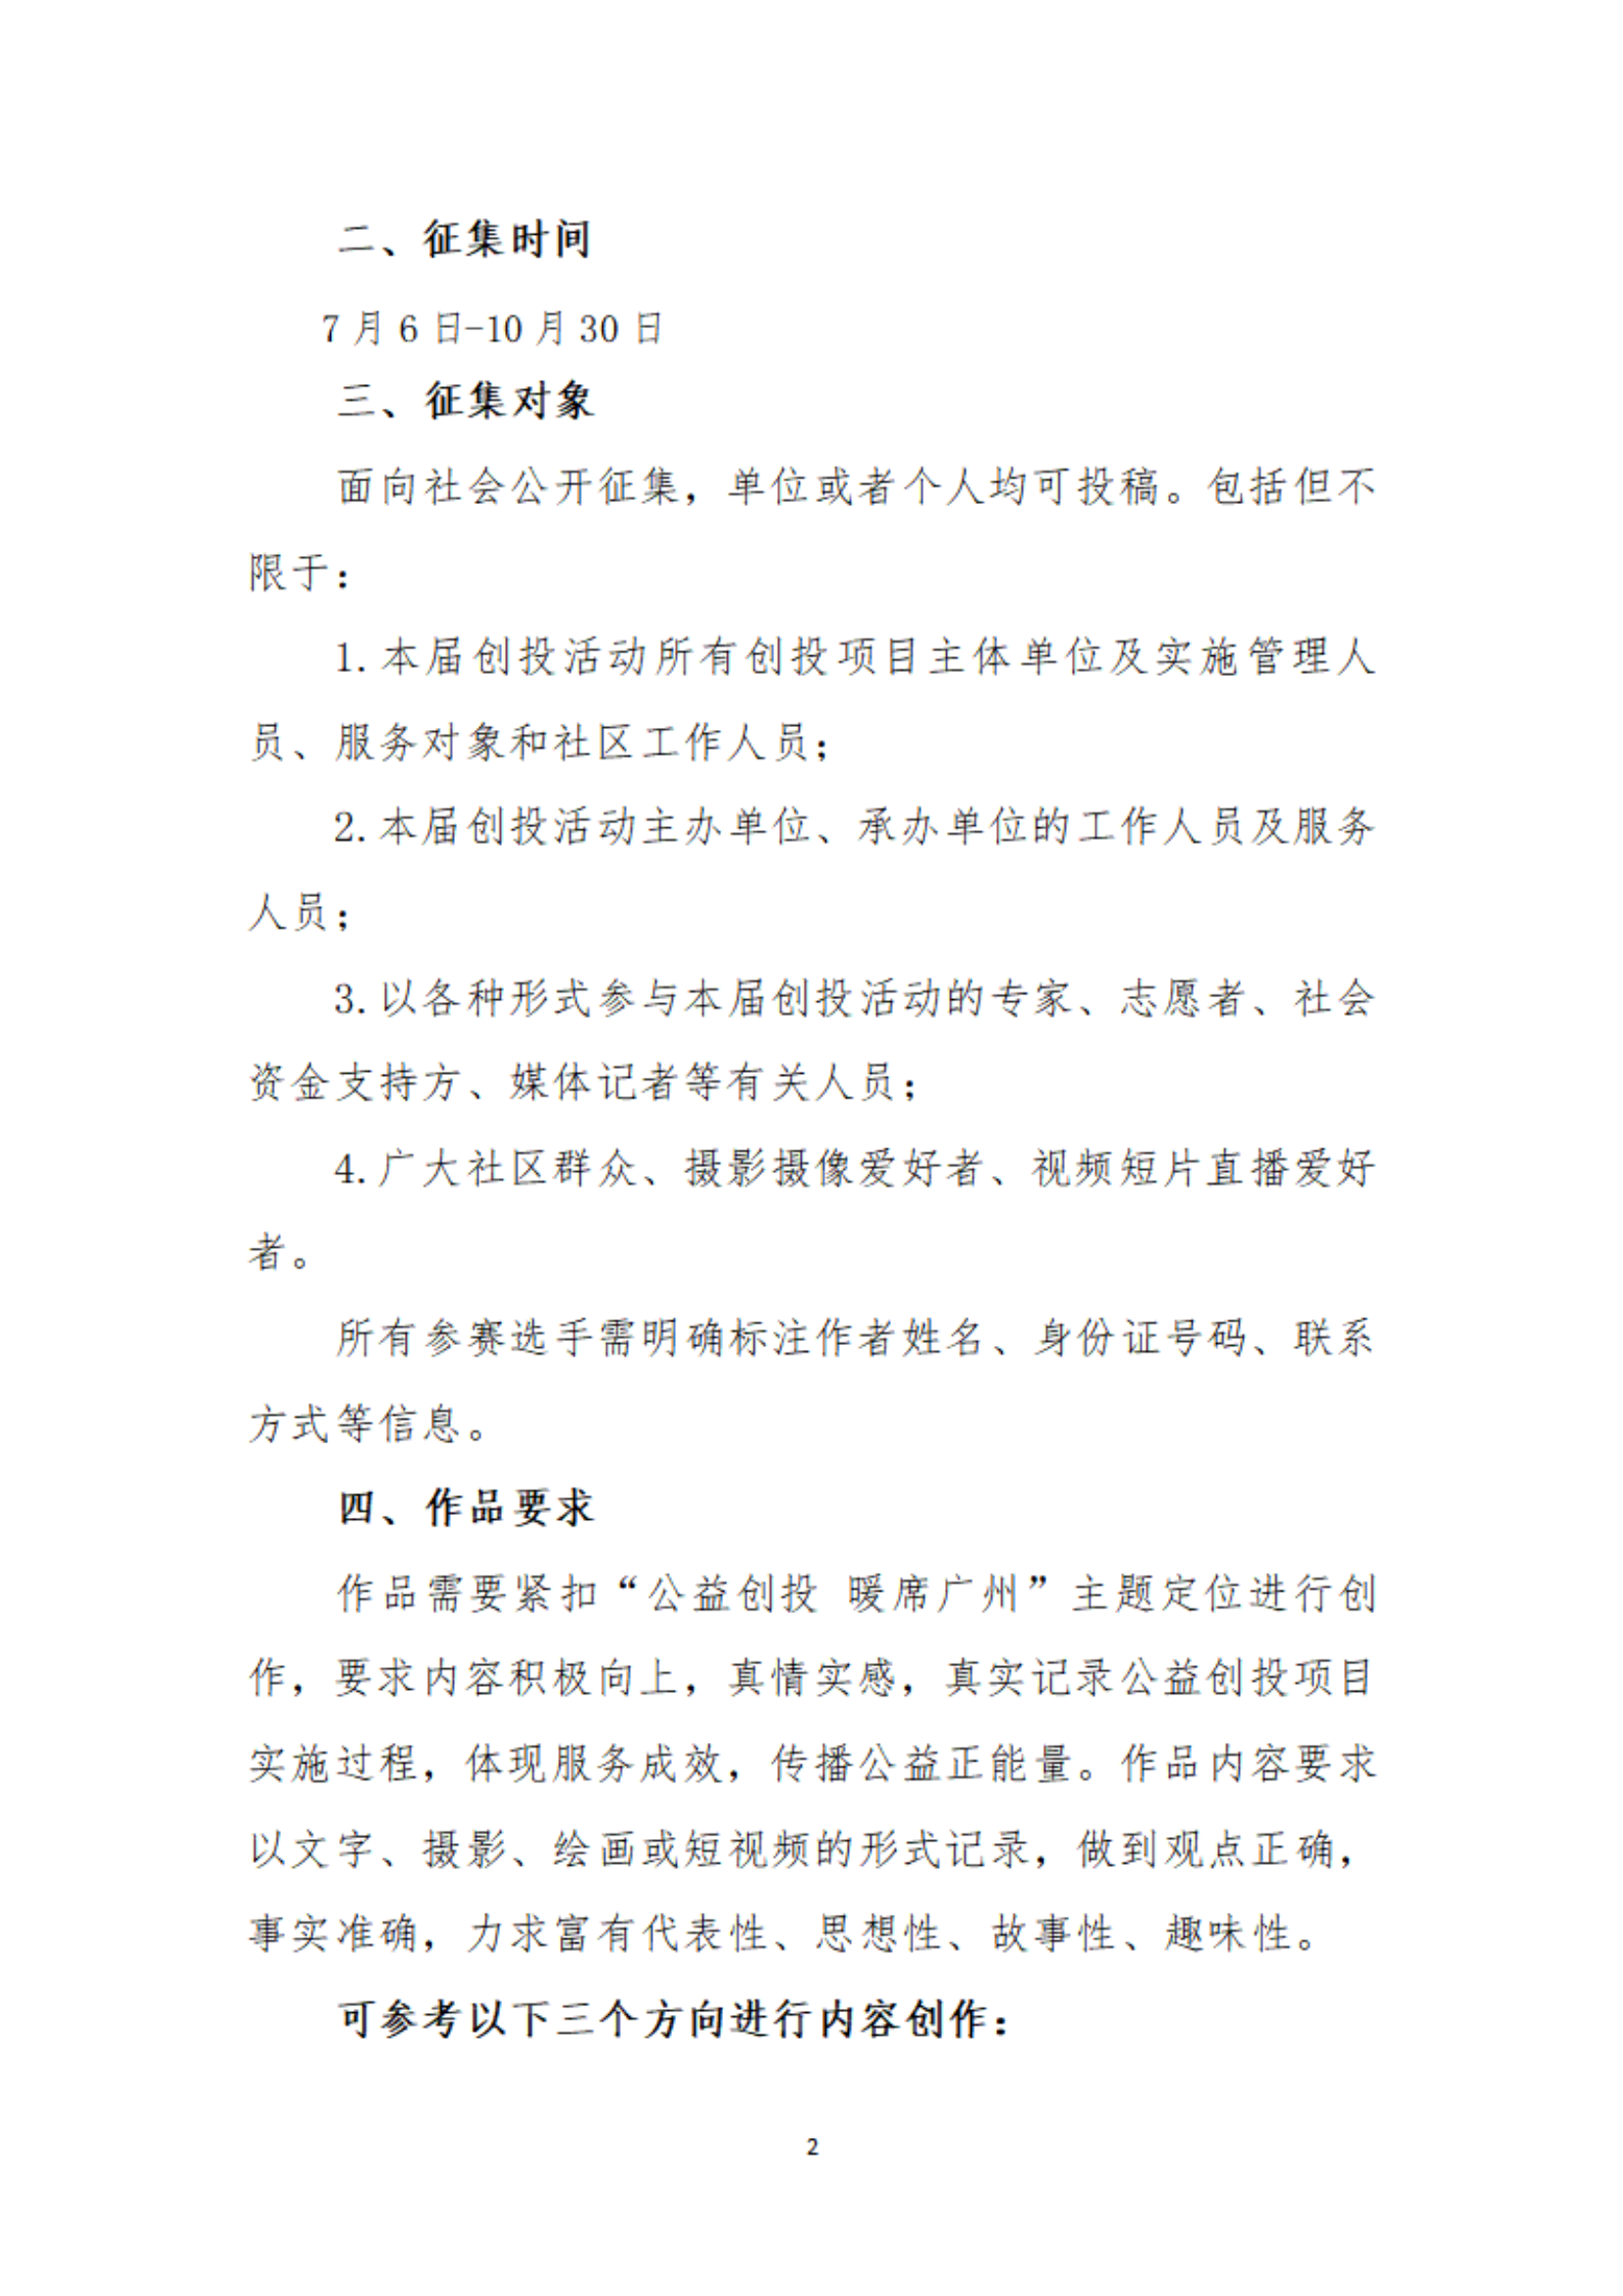 【以此為(wèi)准】关于举办广州市社会组织公益创投活动“公益创投 暖席广州”主题征文(wén)和摄影、短视频大赛的通知_01.png